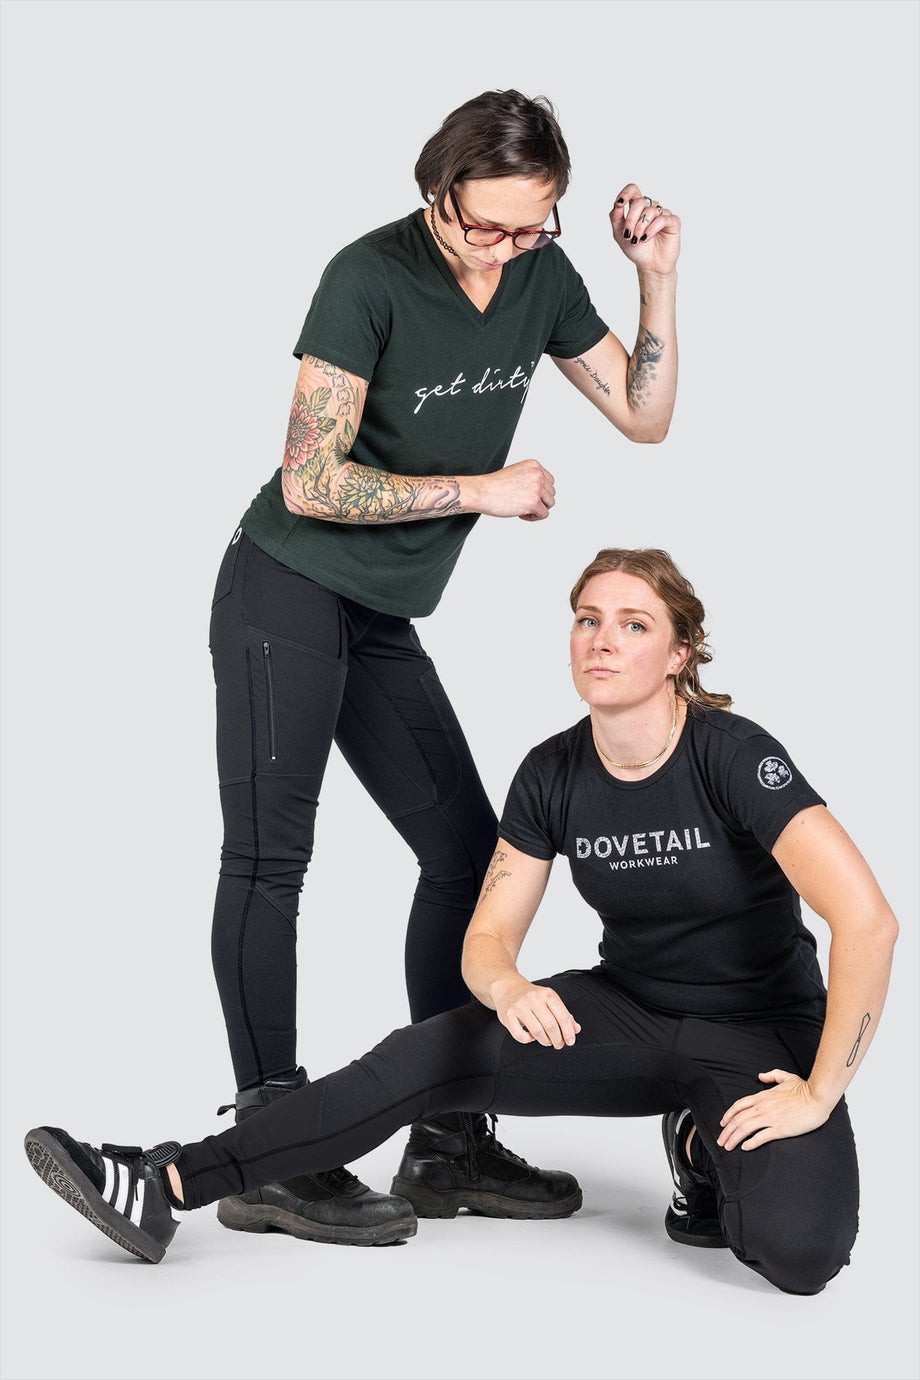 Women's Force® Utility Knit Legging in Black - Jeans/Pants